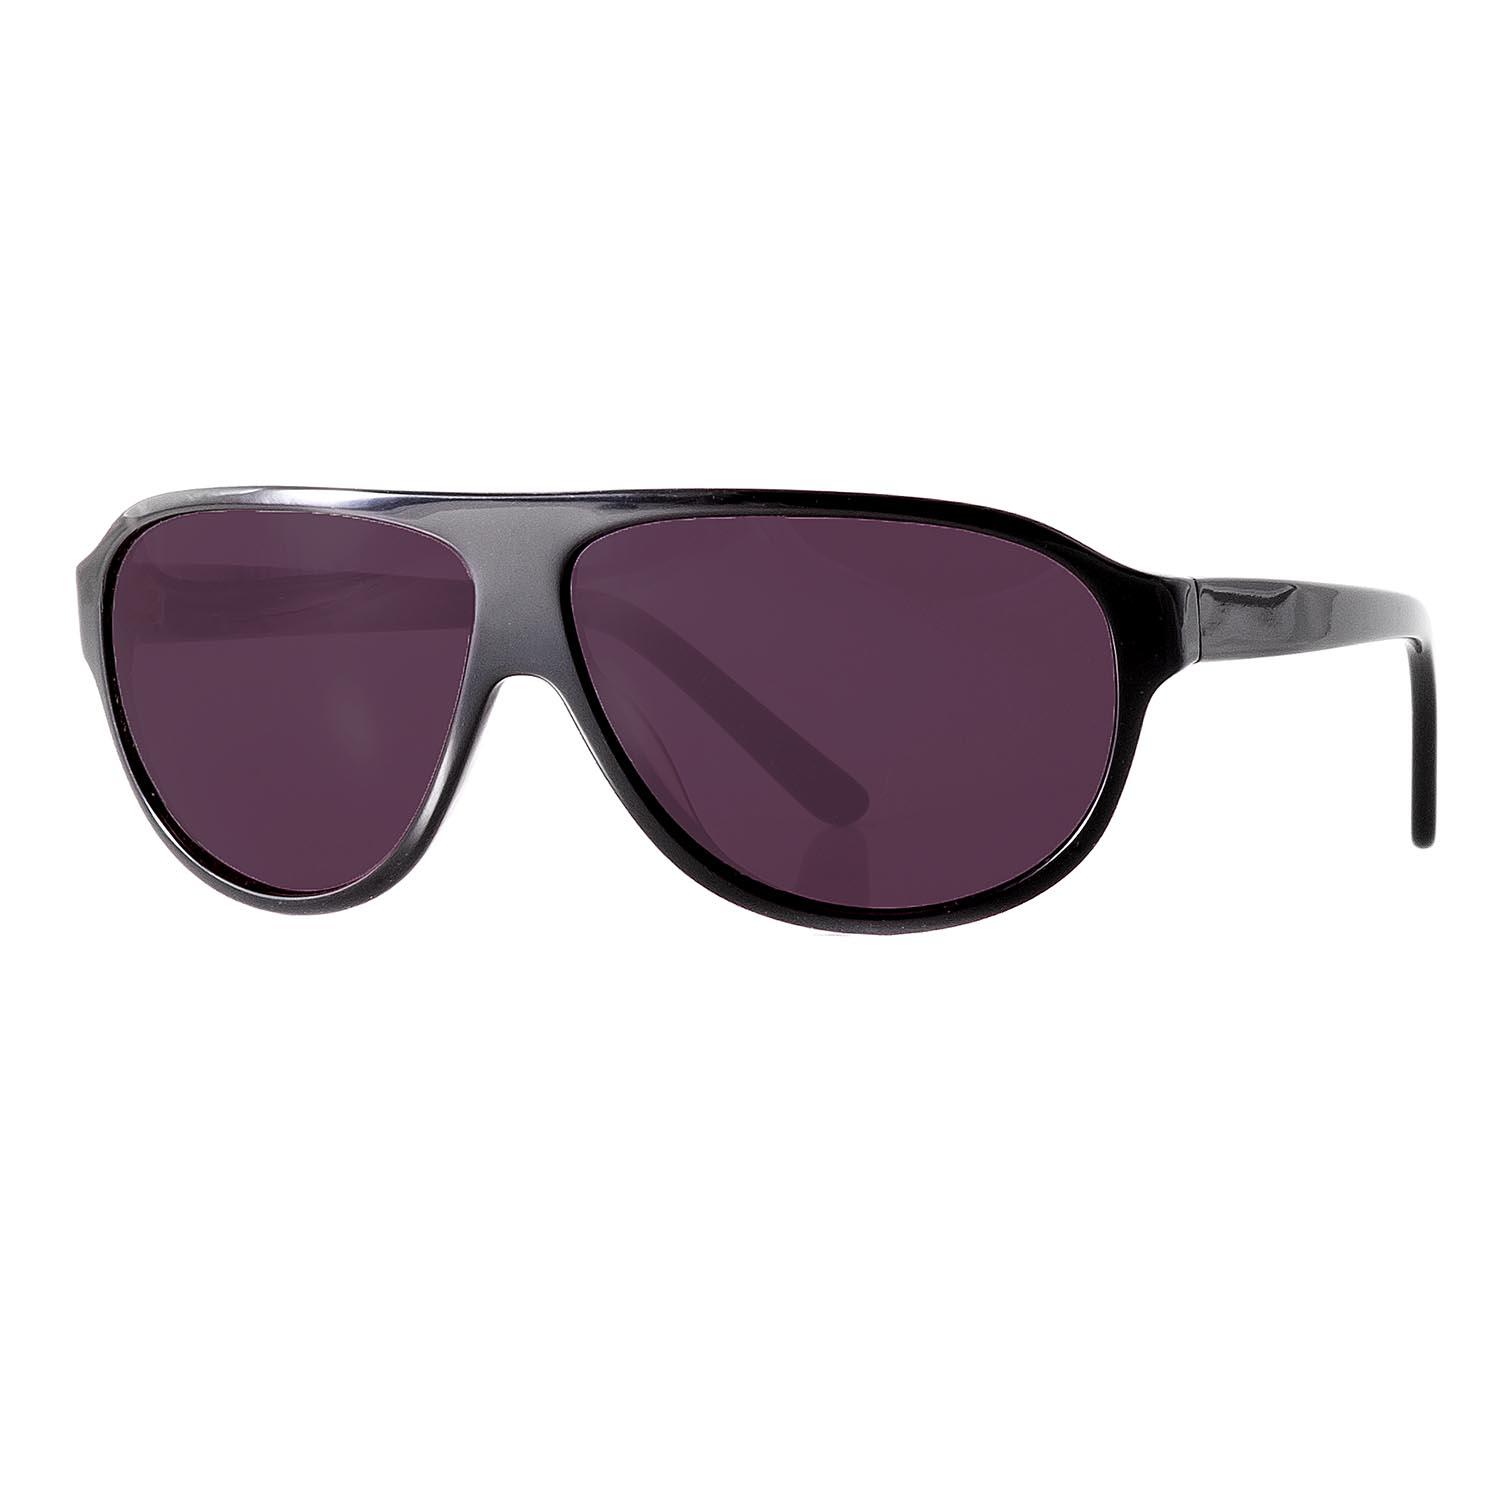 Gafas de sol P32002 negras con lentes oscuras